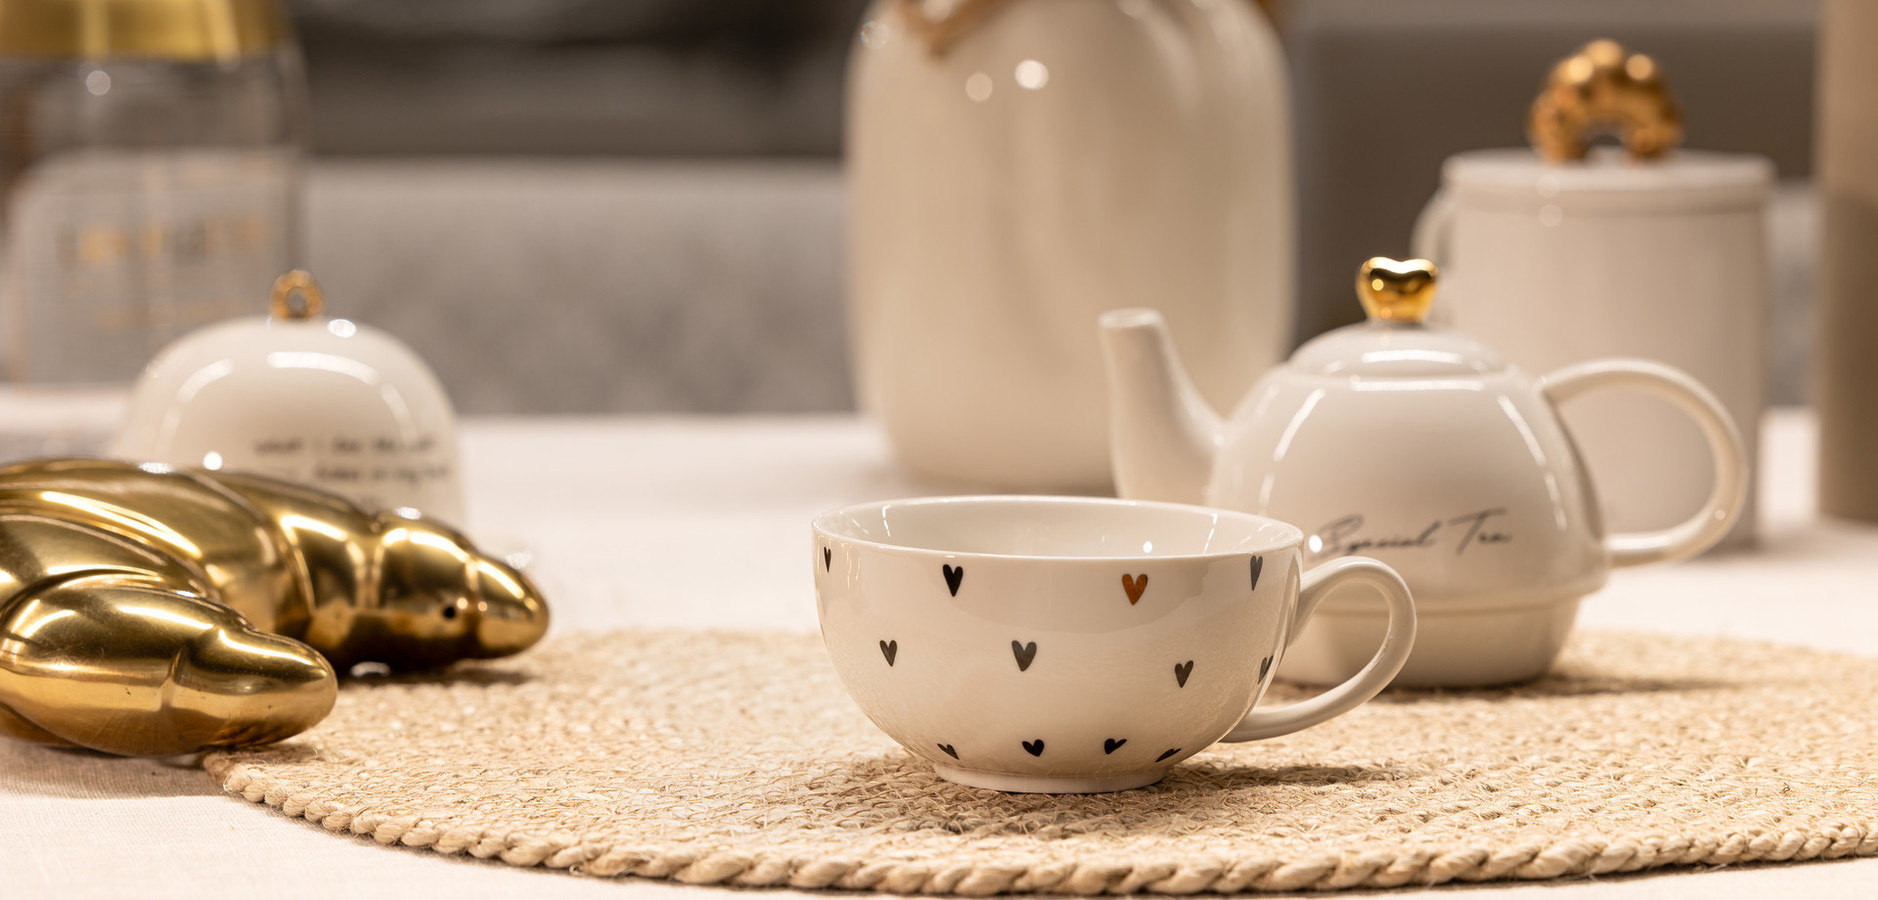 Skodelice za čaj in kavo so ključne za uživanje v teh priljubljenih napitkih. Različne velikosti in oblike skodelic omogočajo izbor, ki ustreza vašim preferencam in okusu. Skodelice z unikatnimi vzorci in barvami dopolnjujejo uživanje v toplih napitkih ter prinašajo dodaten užitek v vsakodnevnih trenutkih pitja čaja ali kave.